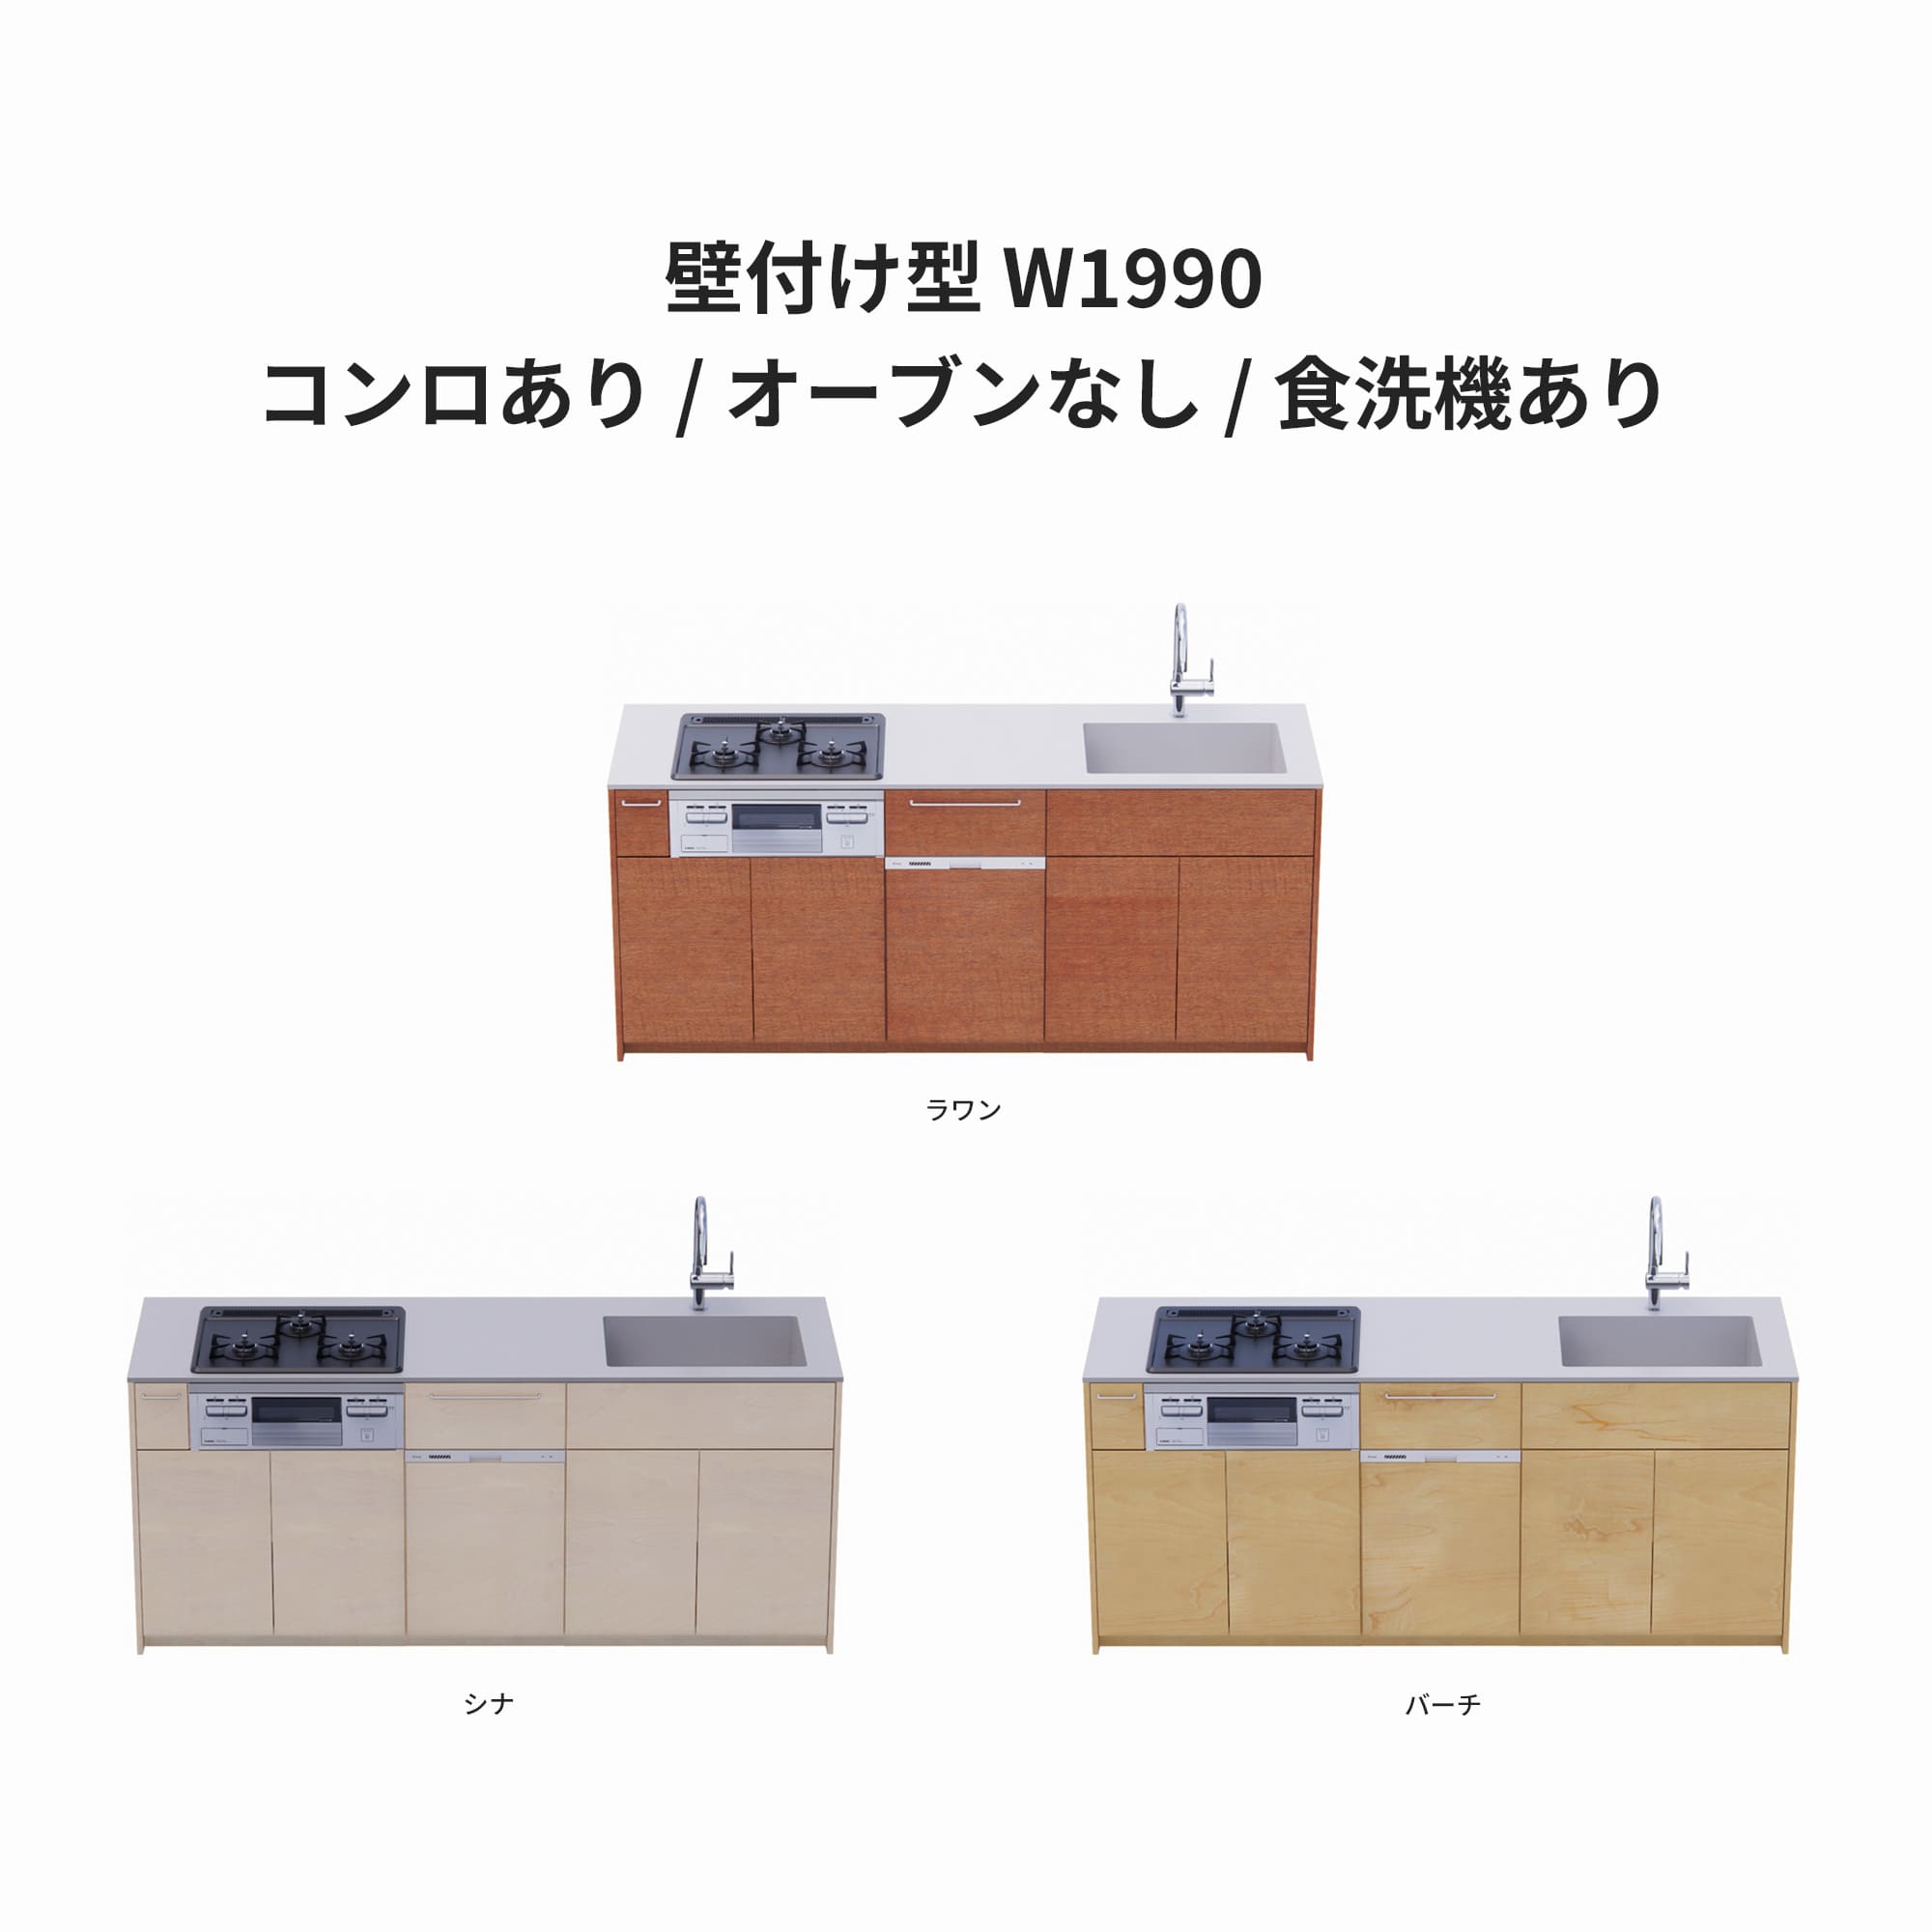 木製システムキッチン 壁付け型 W1990・コンロあり / オーブンなし / 食洗機あり KB-KC022-15-G183 ラワン・シナ・バーチが選択できます